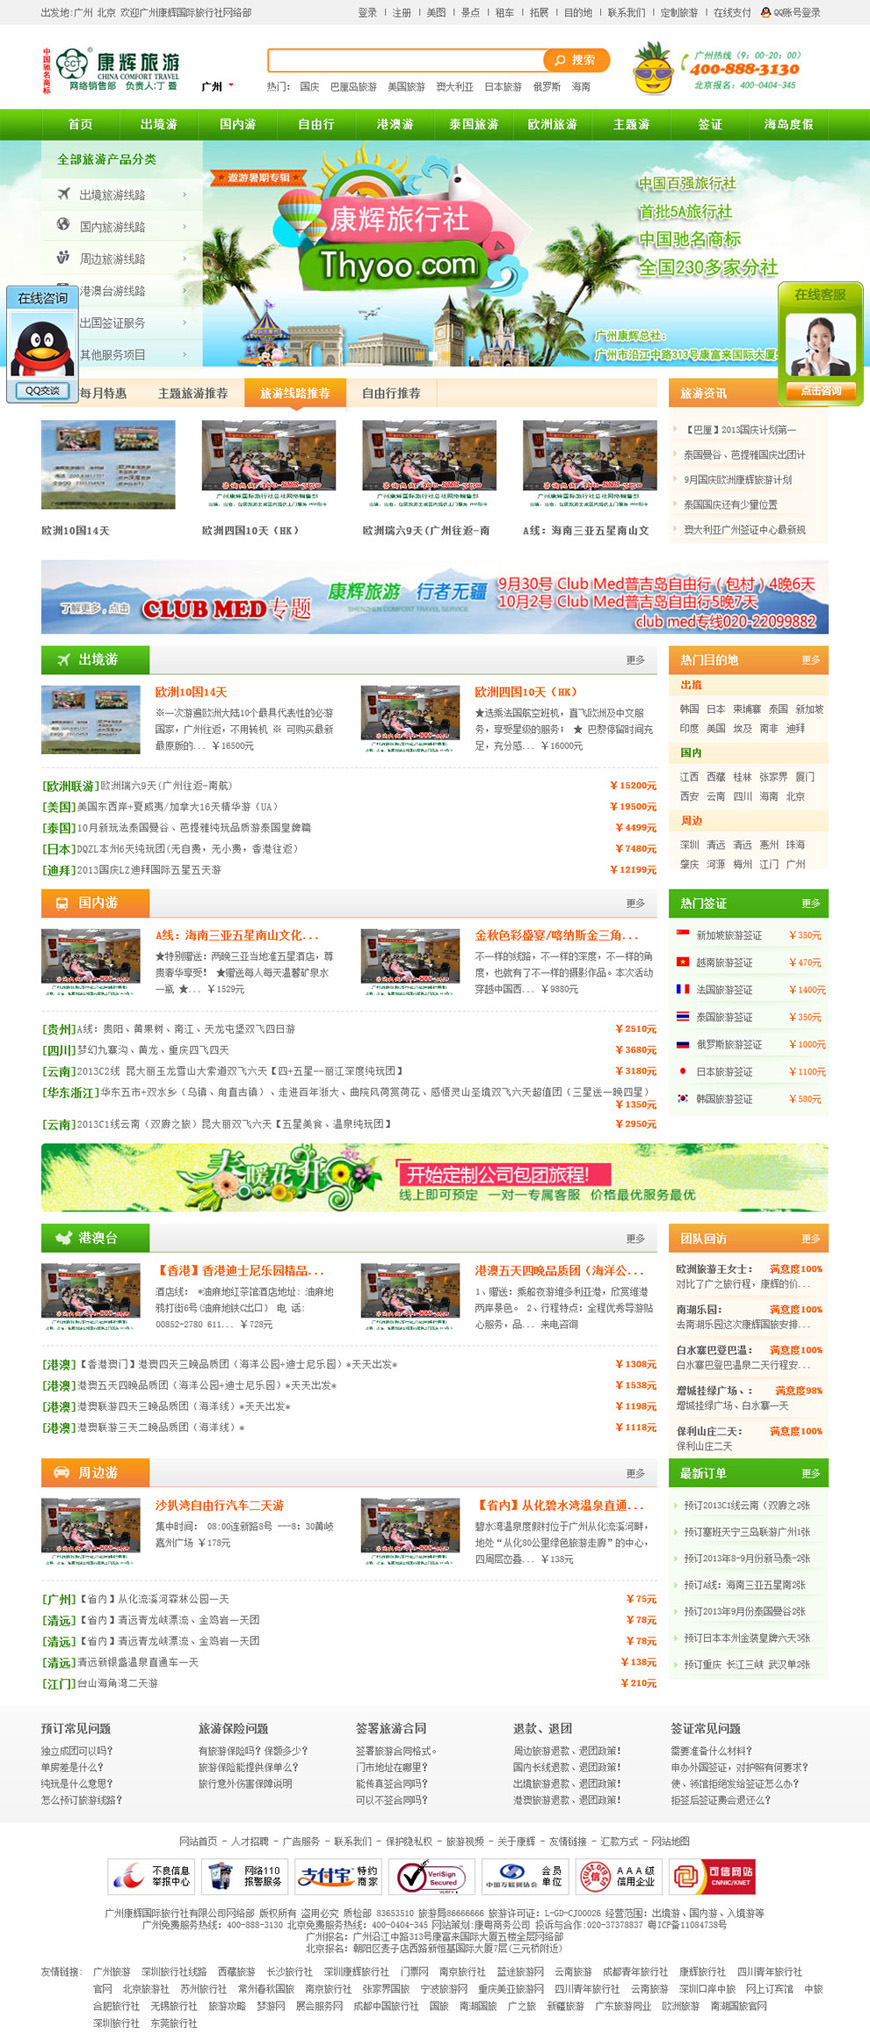 康輝旅遊網站案例